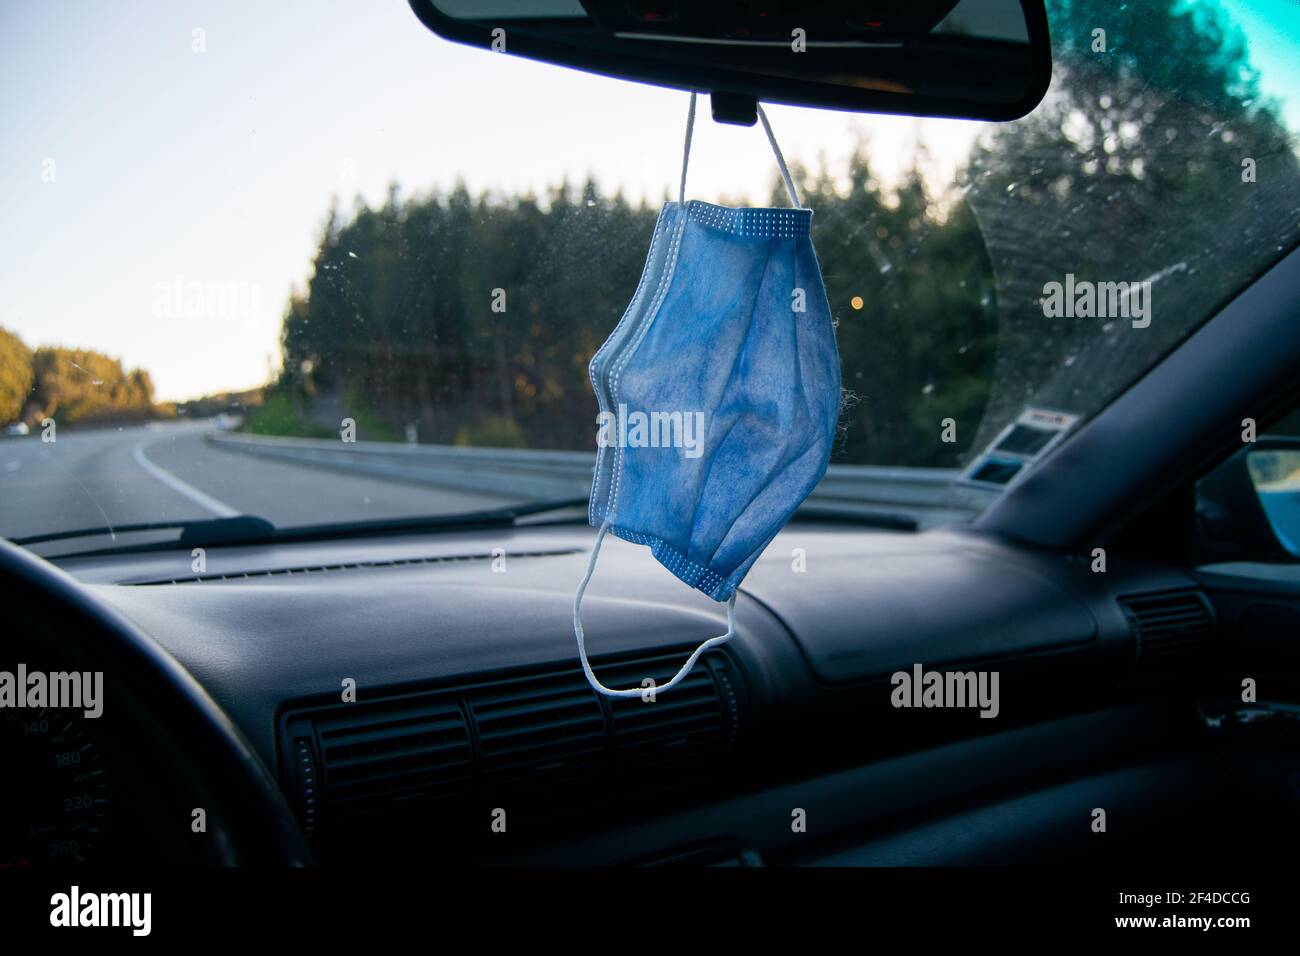 Fahren eines Autos mit Covid19 Maske hängen auf dem Auto Rückansicht Glas. Fahren oder Autofahren in covid19-mal mit der benötigten Maske auf dem Auto. Stockfoto